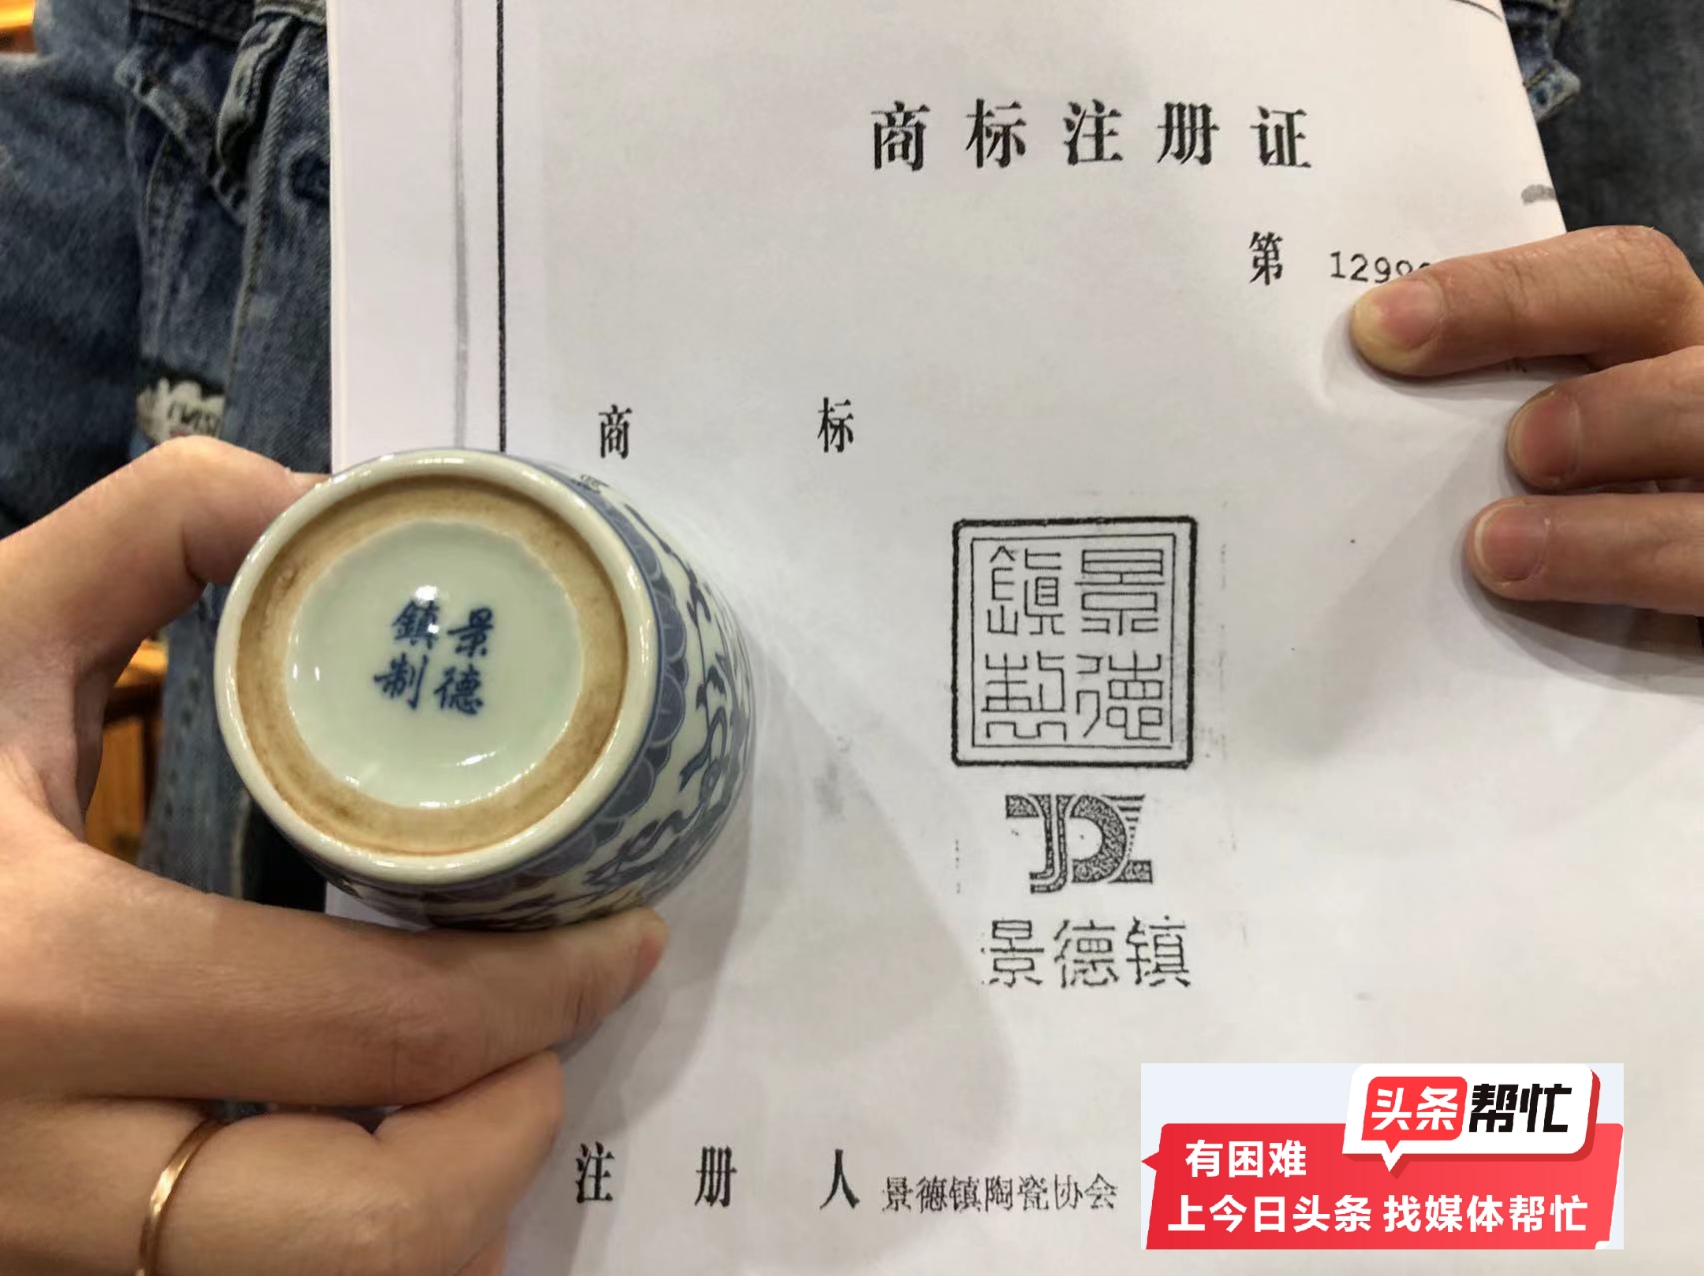 华商记者帮｜| 几十元卖了个茶叶罐被索赔2万，只因有“景德镇”底款